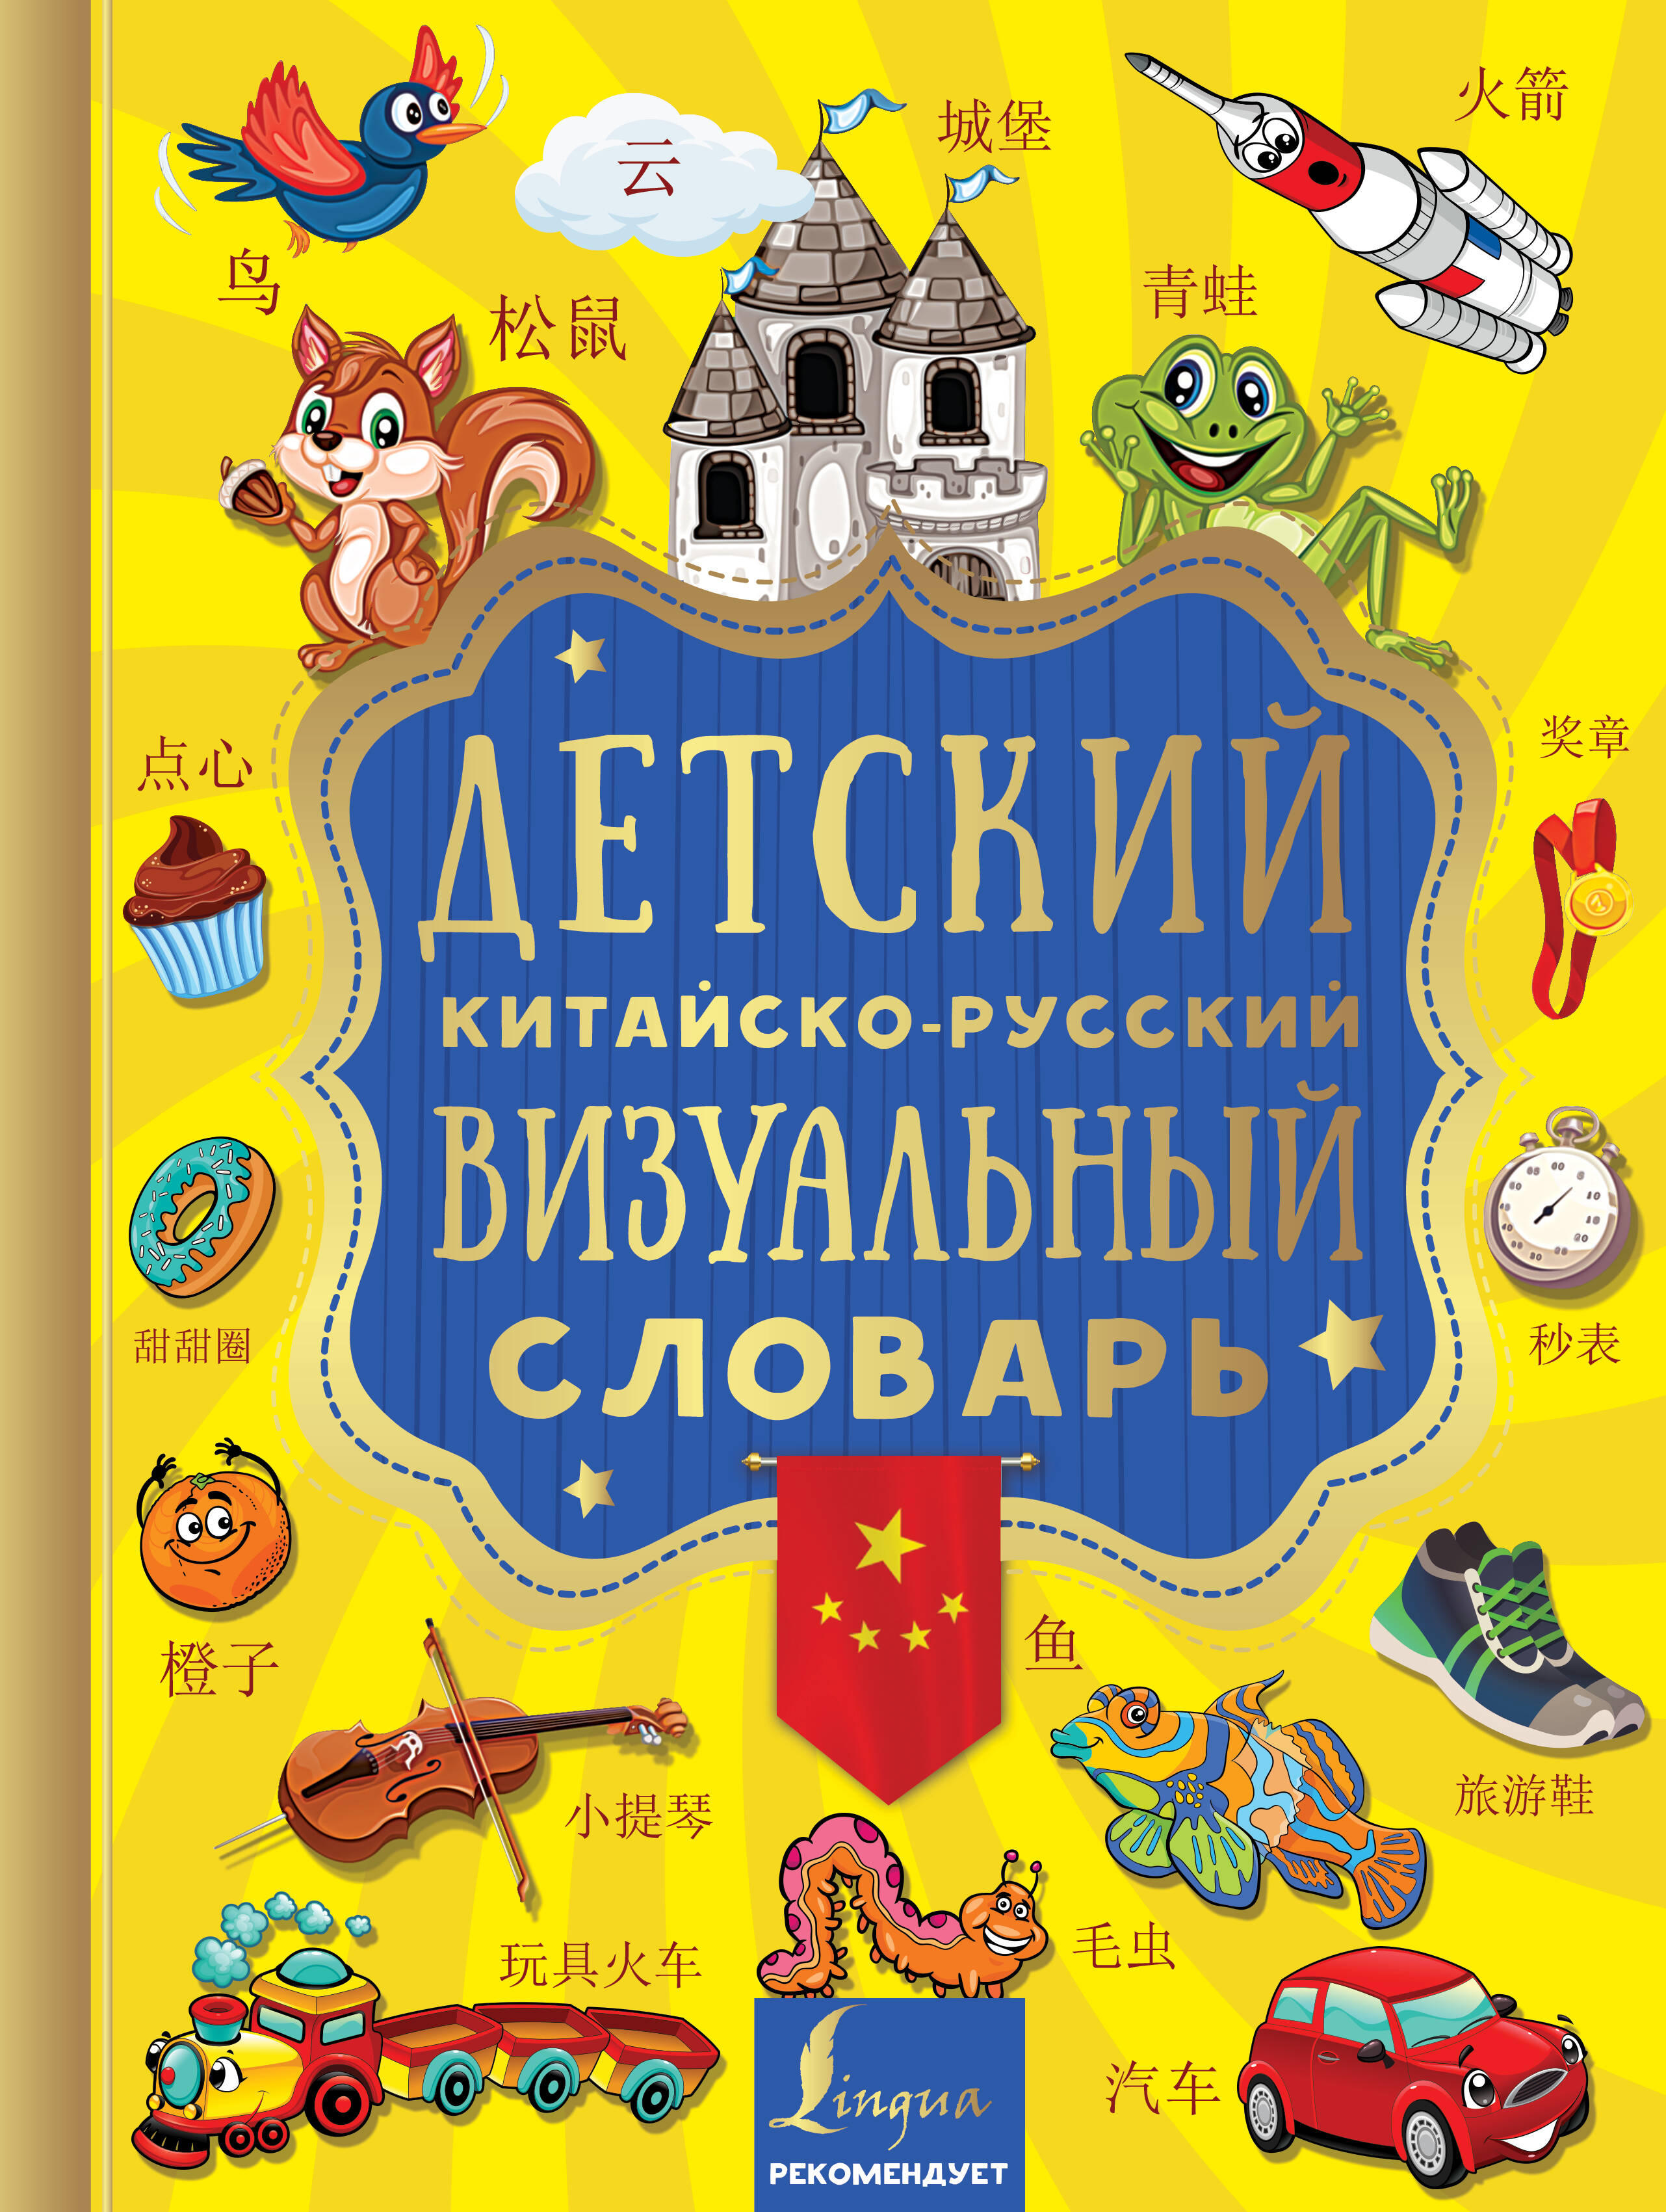  Детский китайско-русский визуальный словарь - страница 0